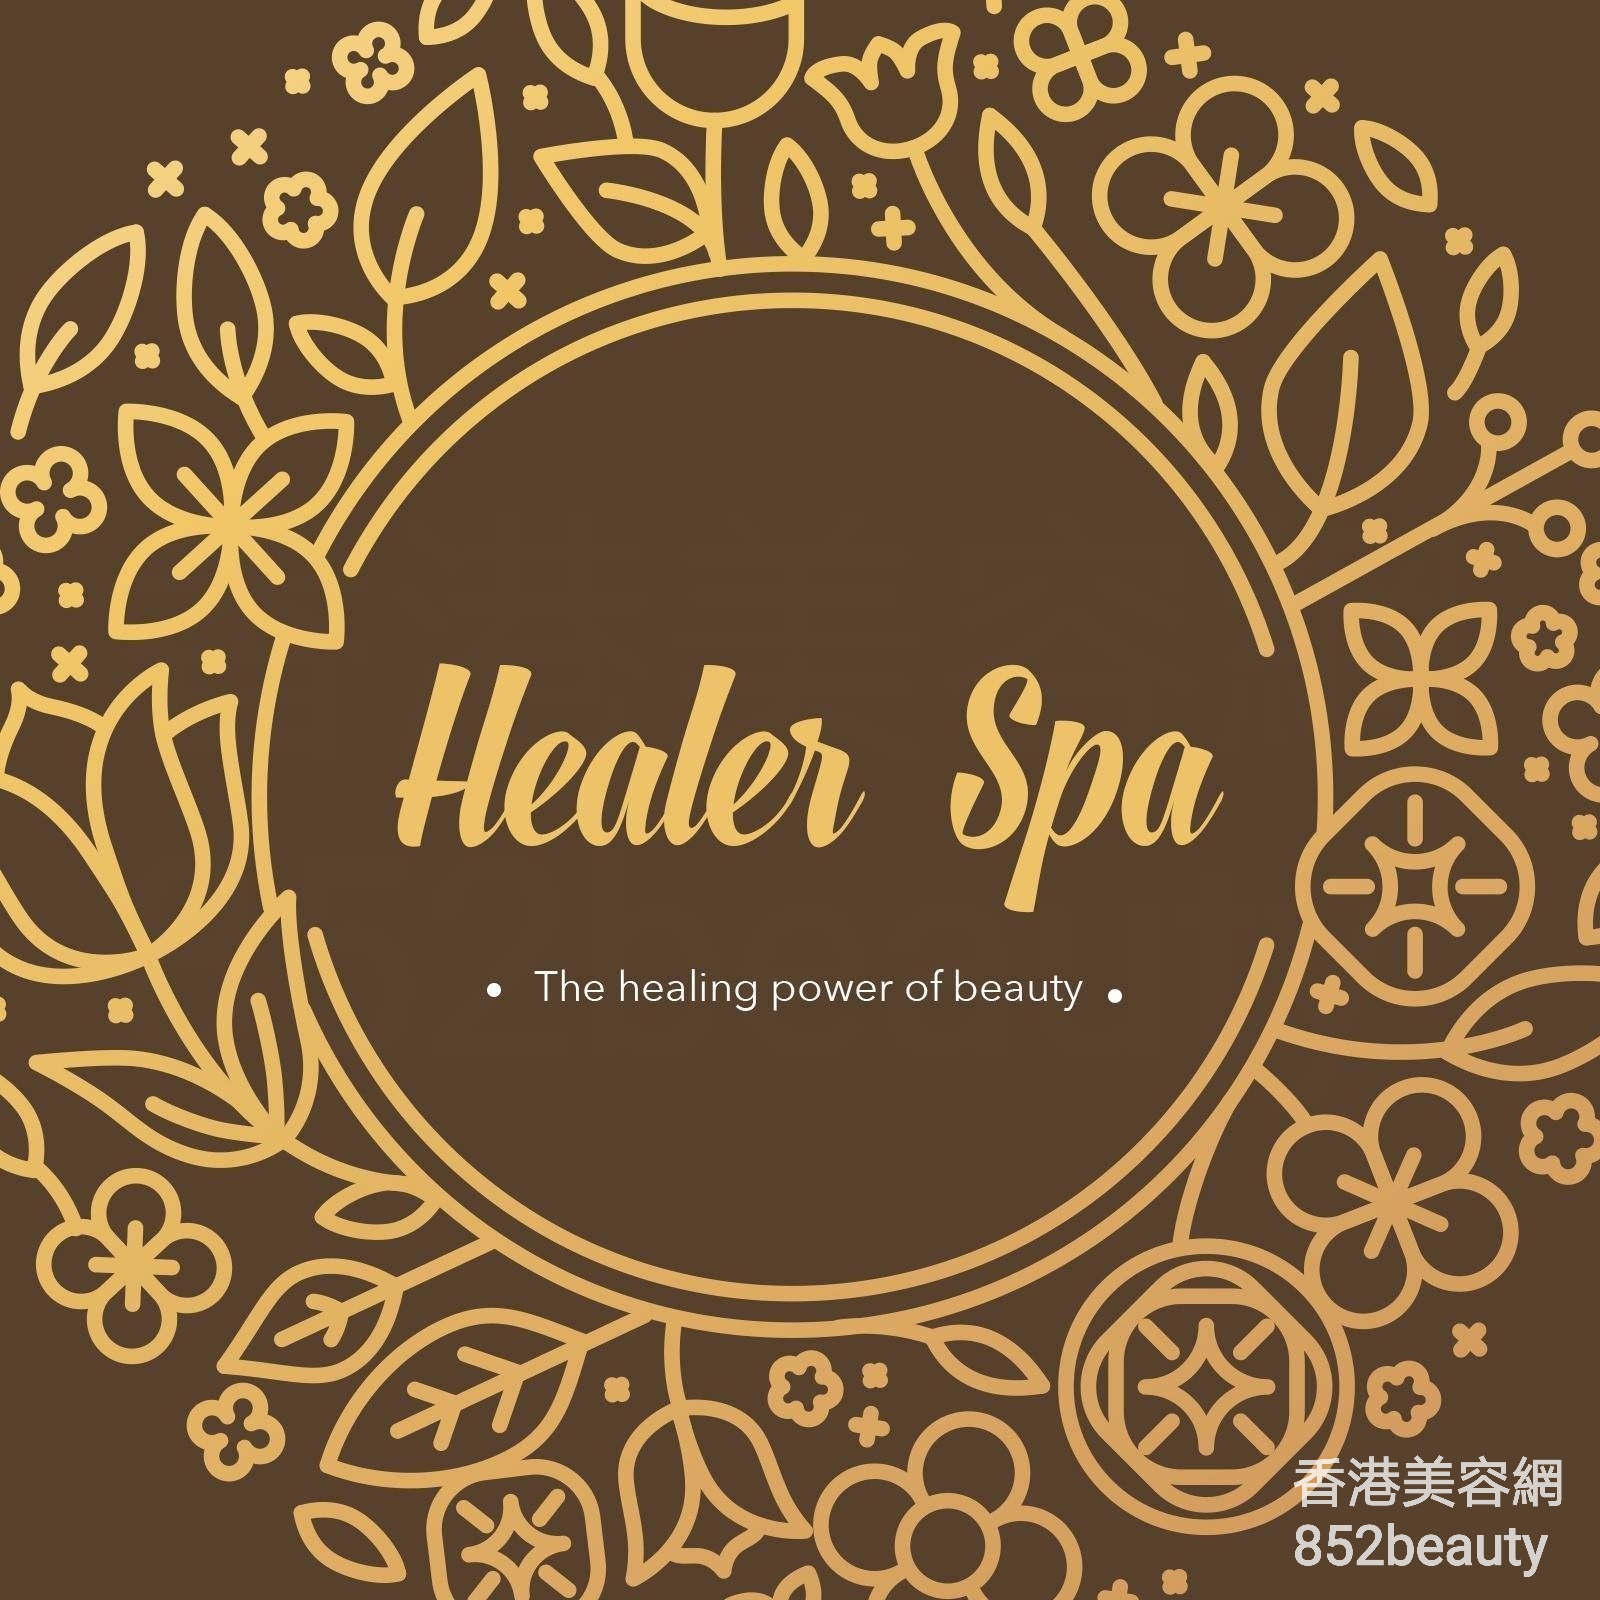 香港美容網 Hong Kong Beauty Salon 美容院 / 美容師: Healer SPA